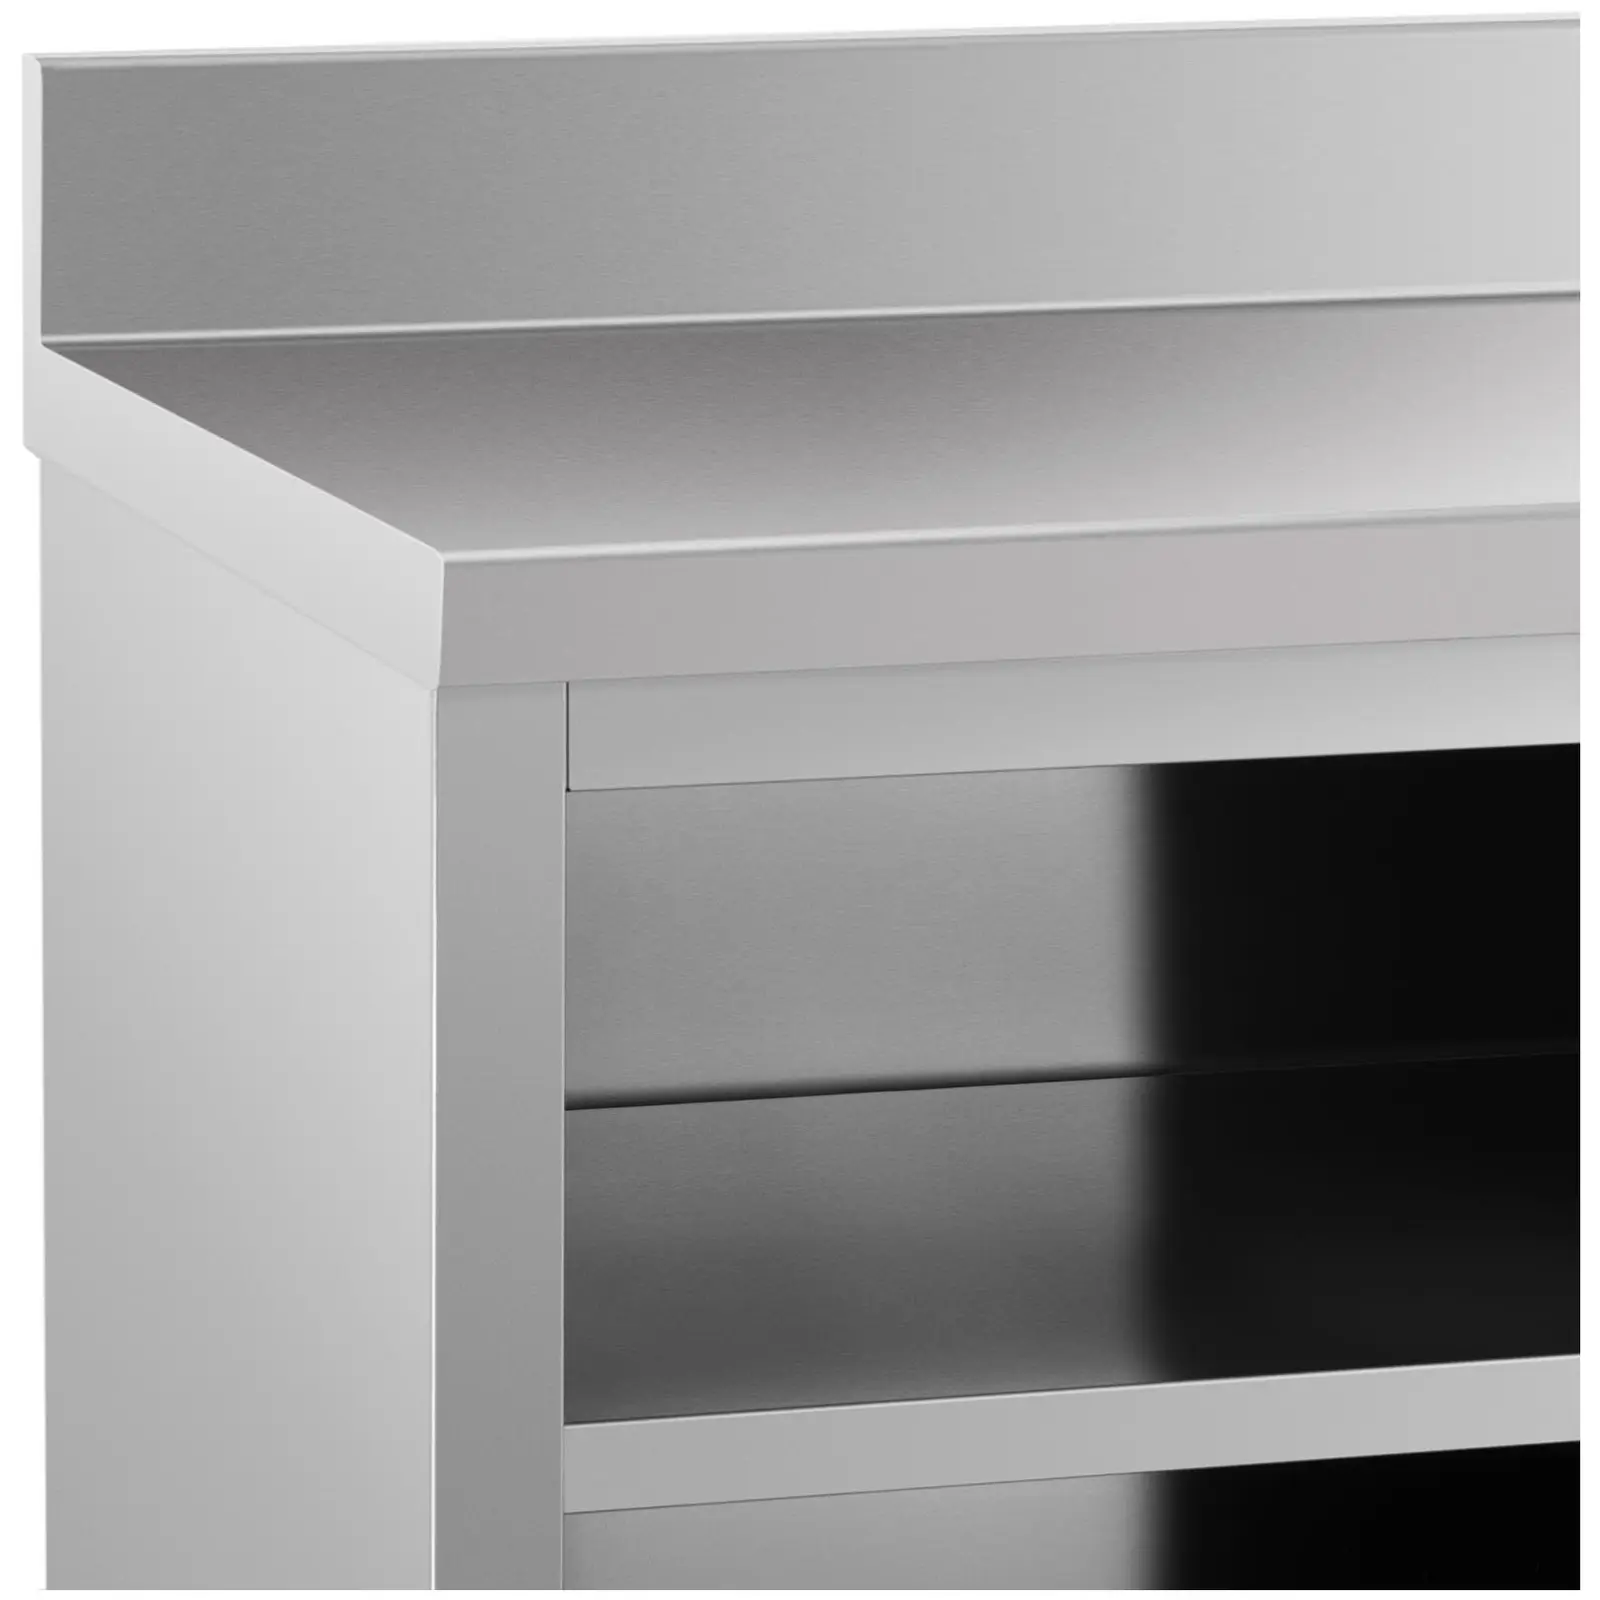 Mueble neutro - antisalpique - 180 x 60 cm - hasta 600 kg